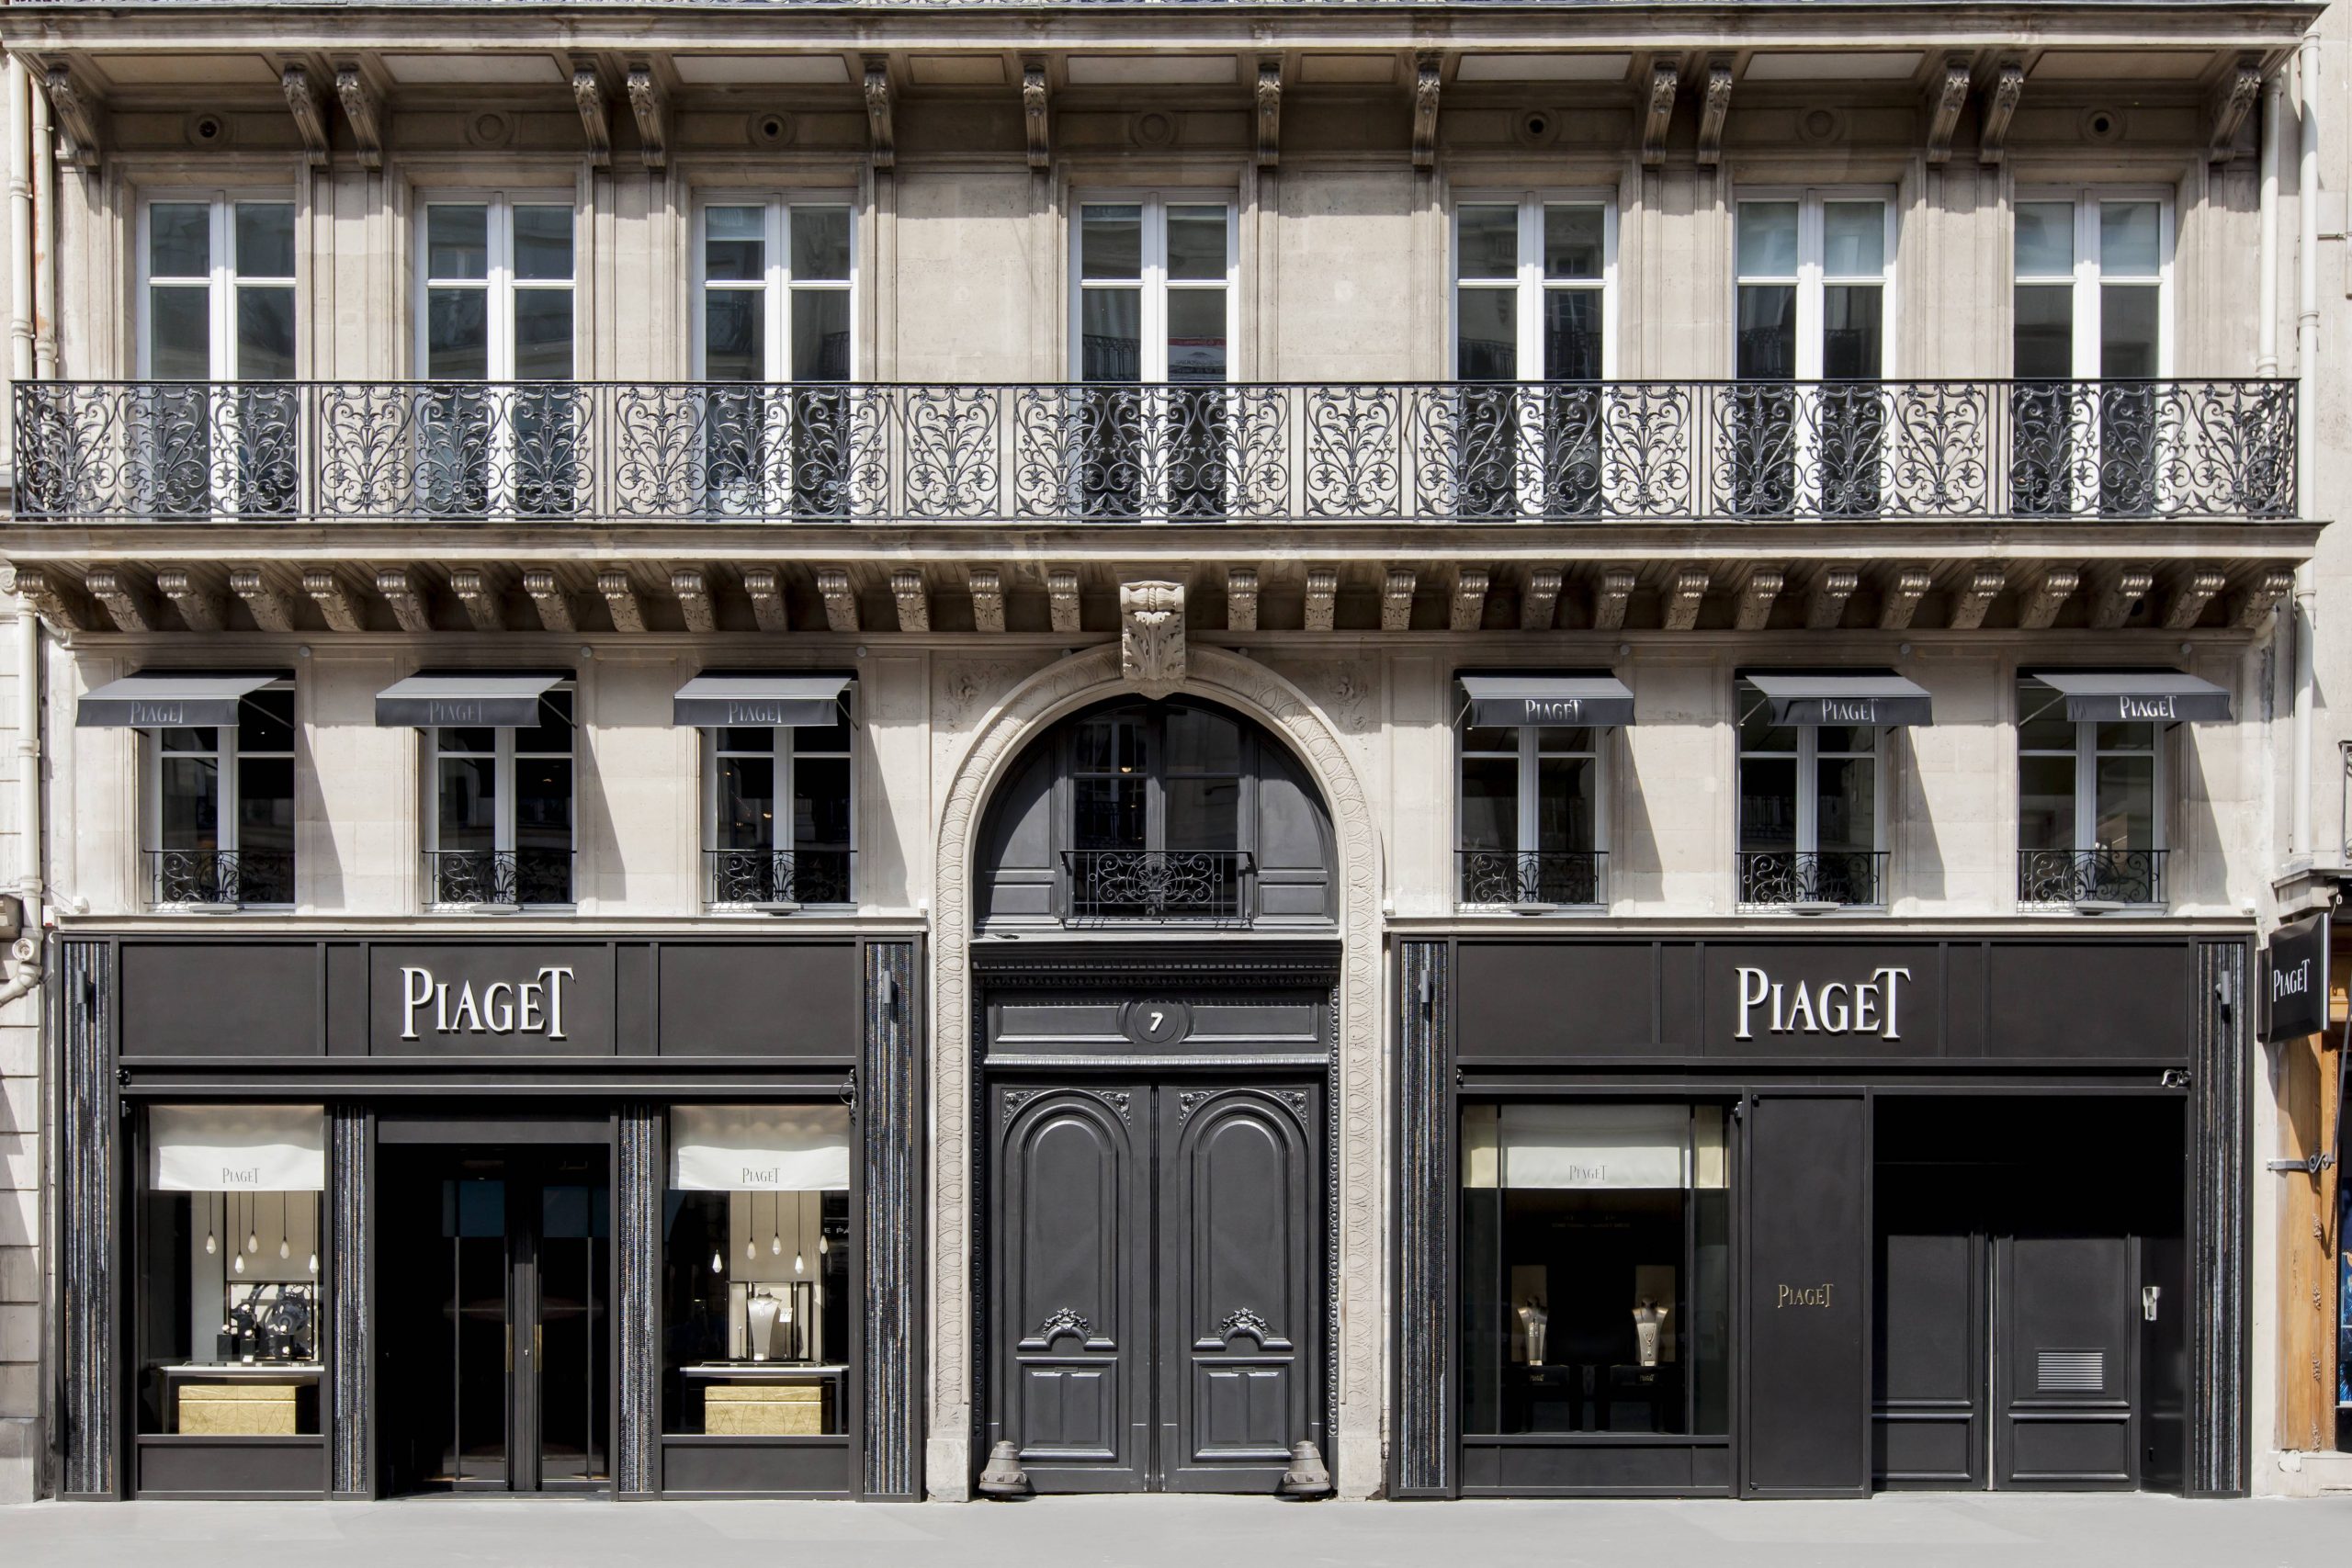 The Piaget façade at 7 rue de la Paix